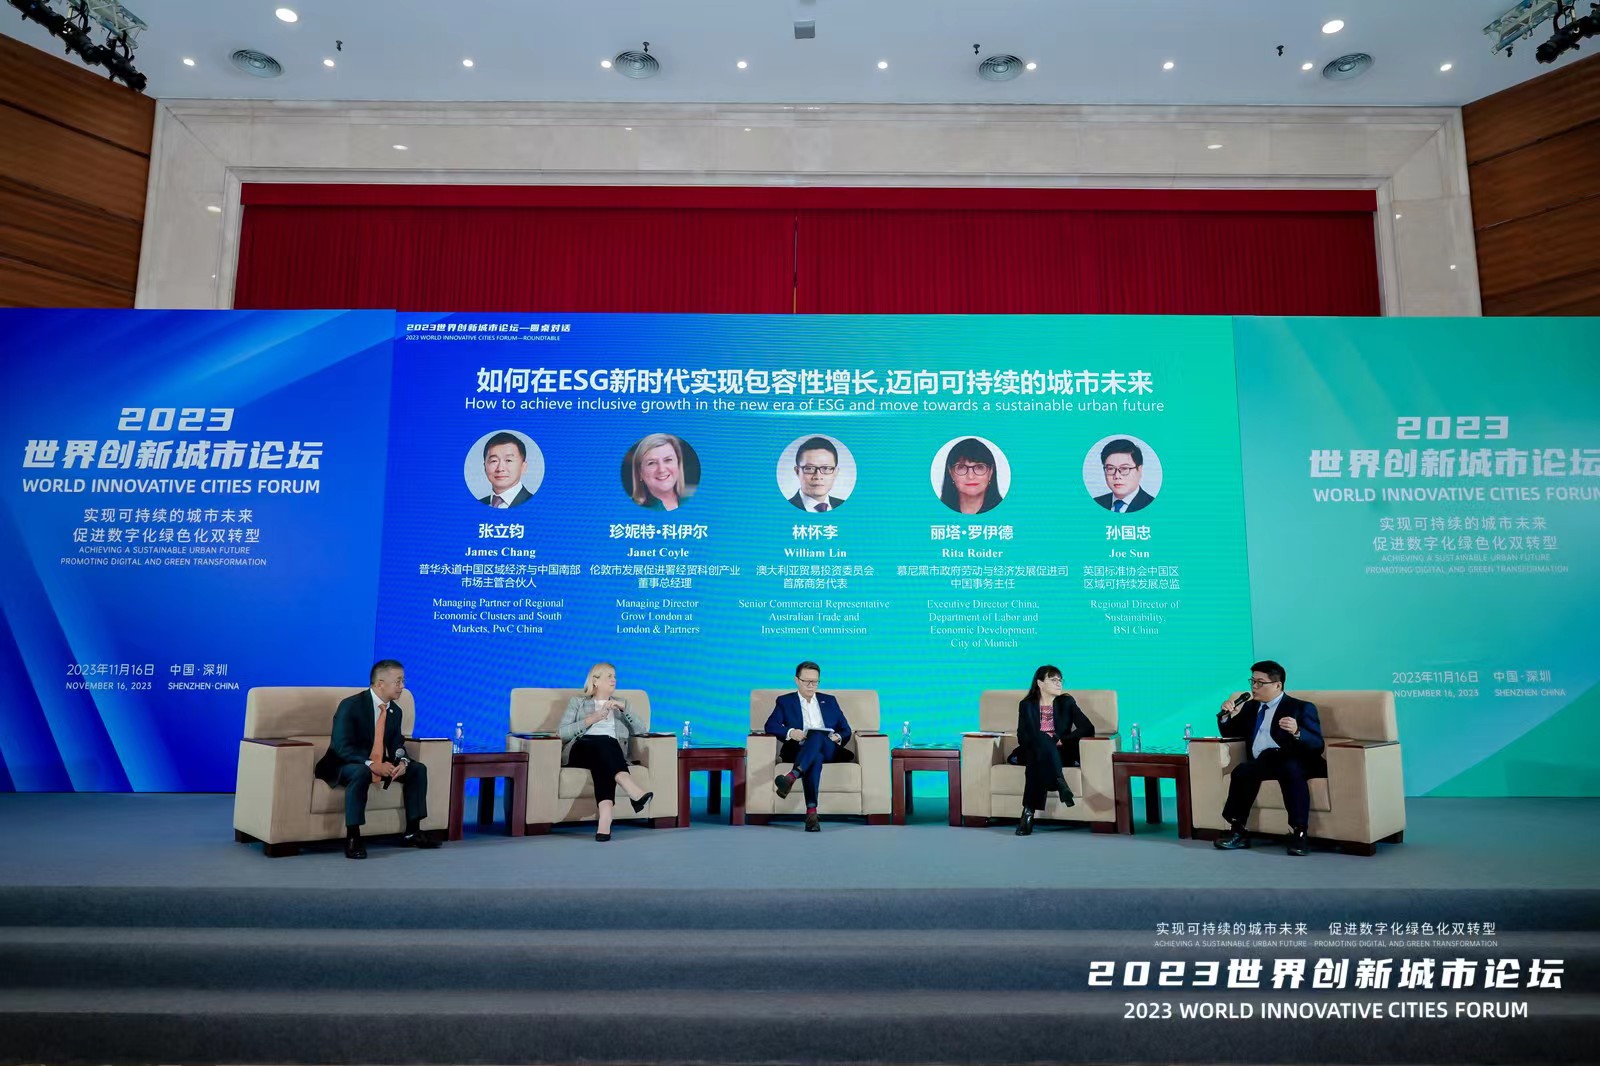 2023世界創新城市論壇在深圳舉辦  聚焦城市數碼化綠色化雙轉型